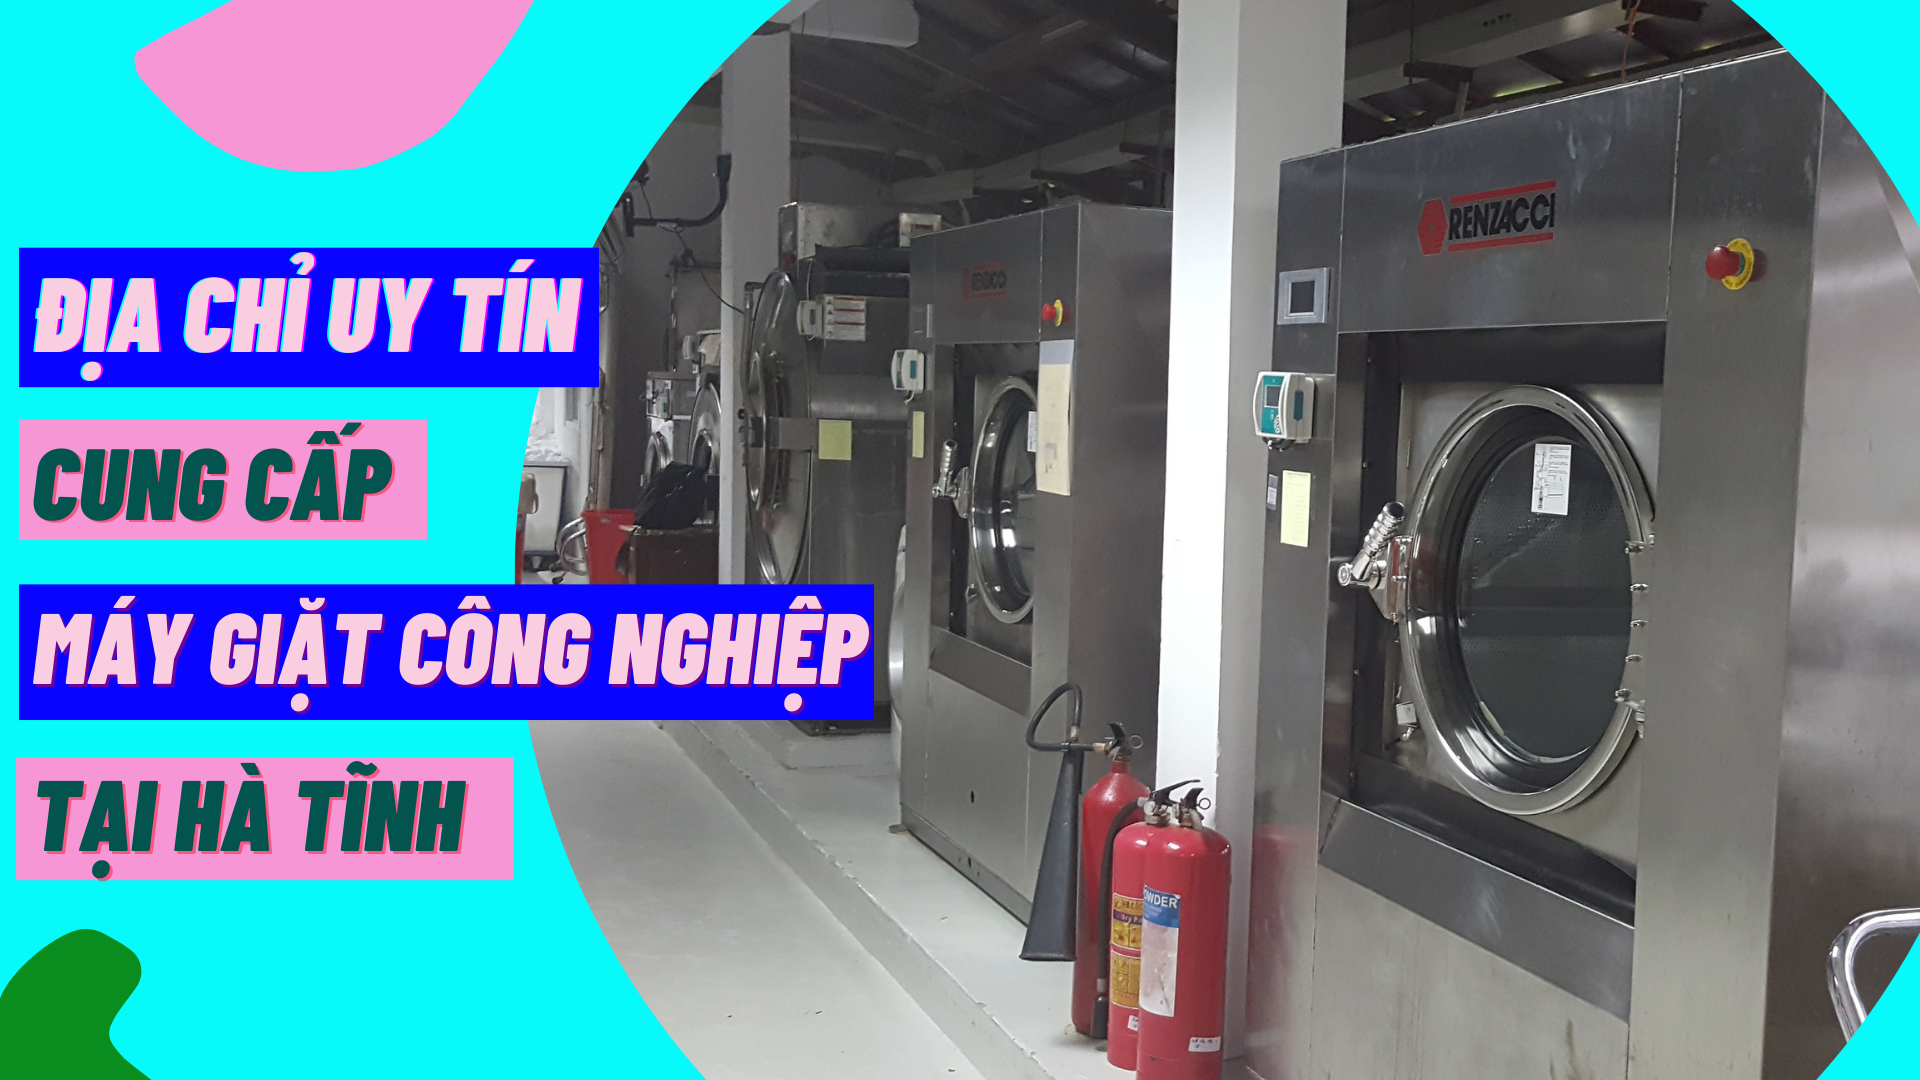 Địa chỉ uy tín cung cấp máy giặt công nghiệp tại Hà Tĩnh